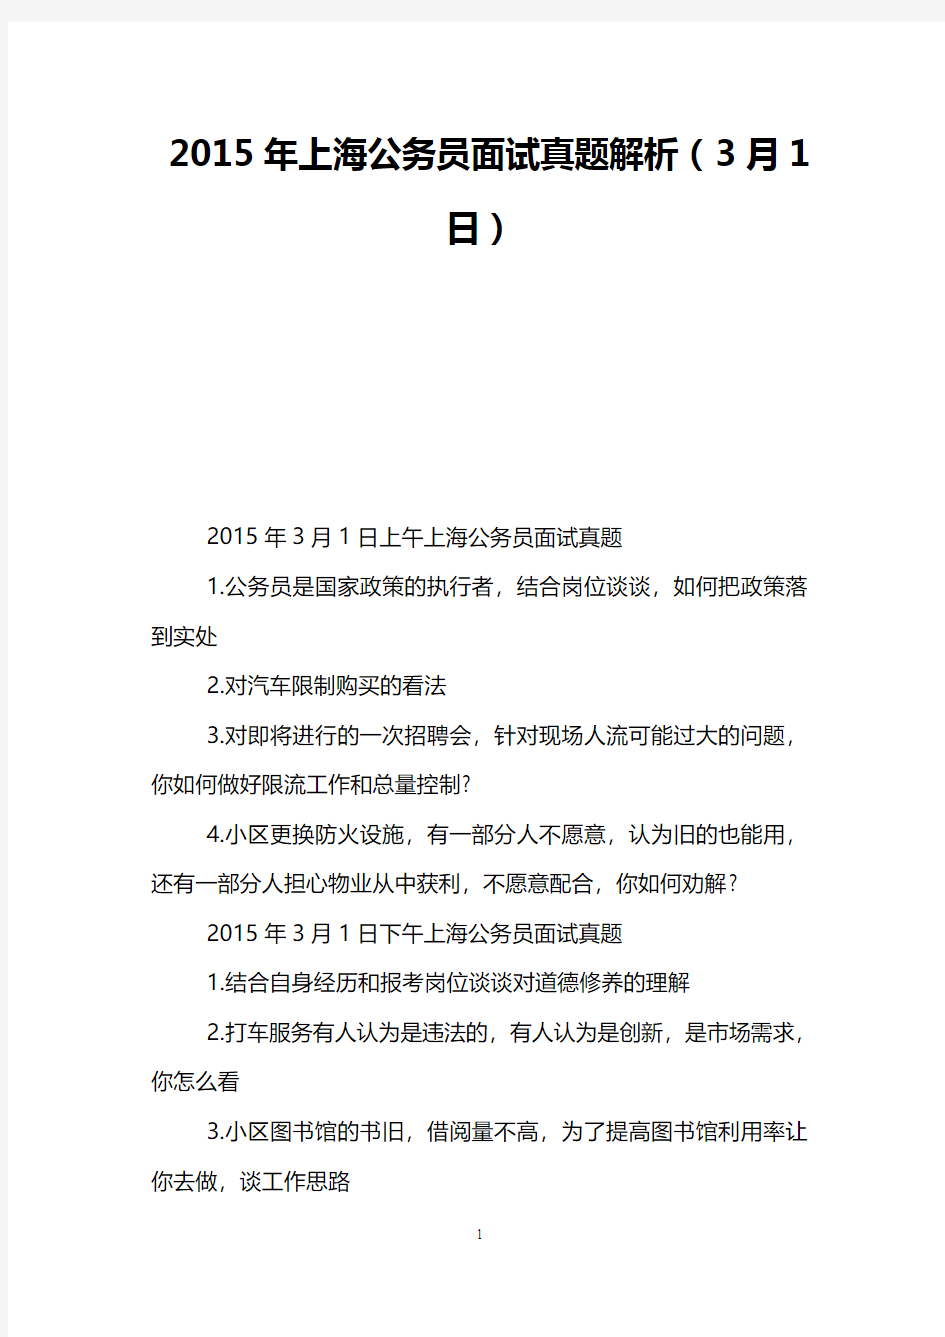 2015年上海公务员面试真题解析(3月1日)